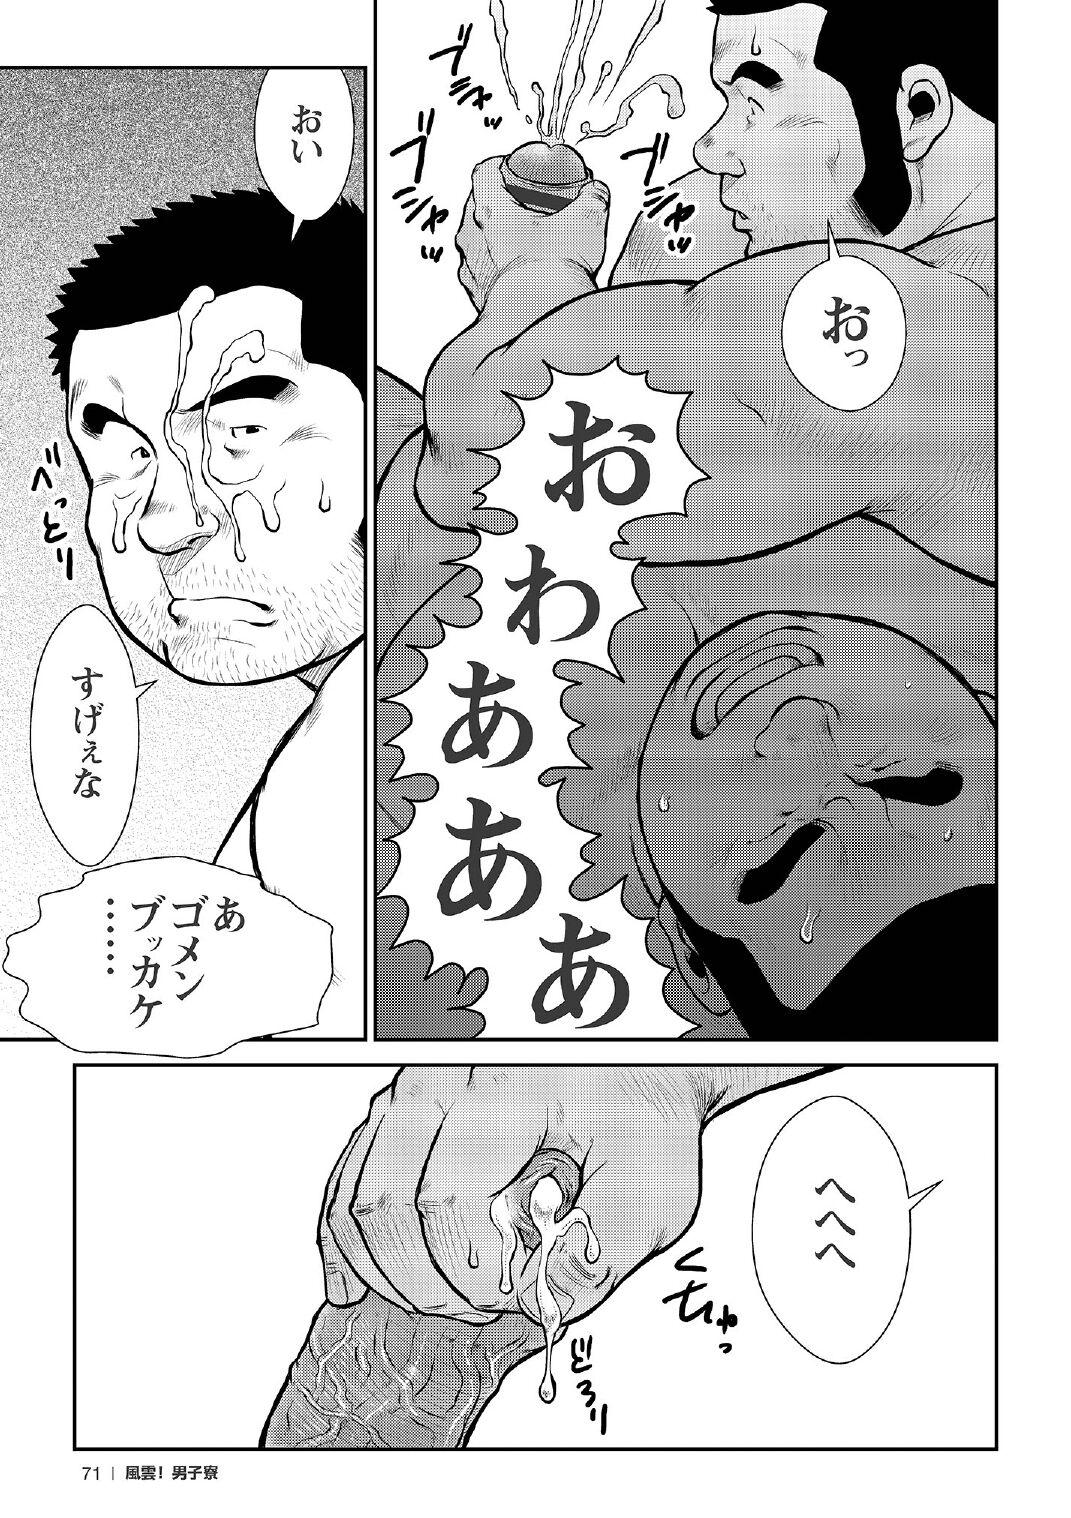 [Ebisubashi Seizou] Ebisubashi Seizou Tanpen Manga Shuu 2 Fuuun! Danshi Ryou [Bunsatsuban] PART 2 Bousou Hantou Taifuu Zensen Ch. 1 + Ch. 2 [Digital] 48